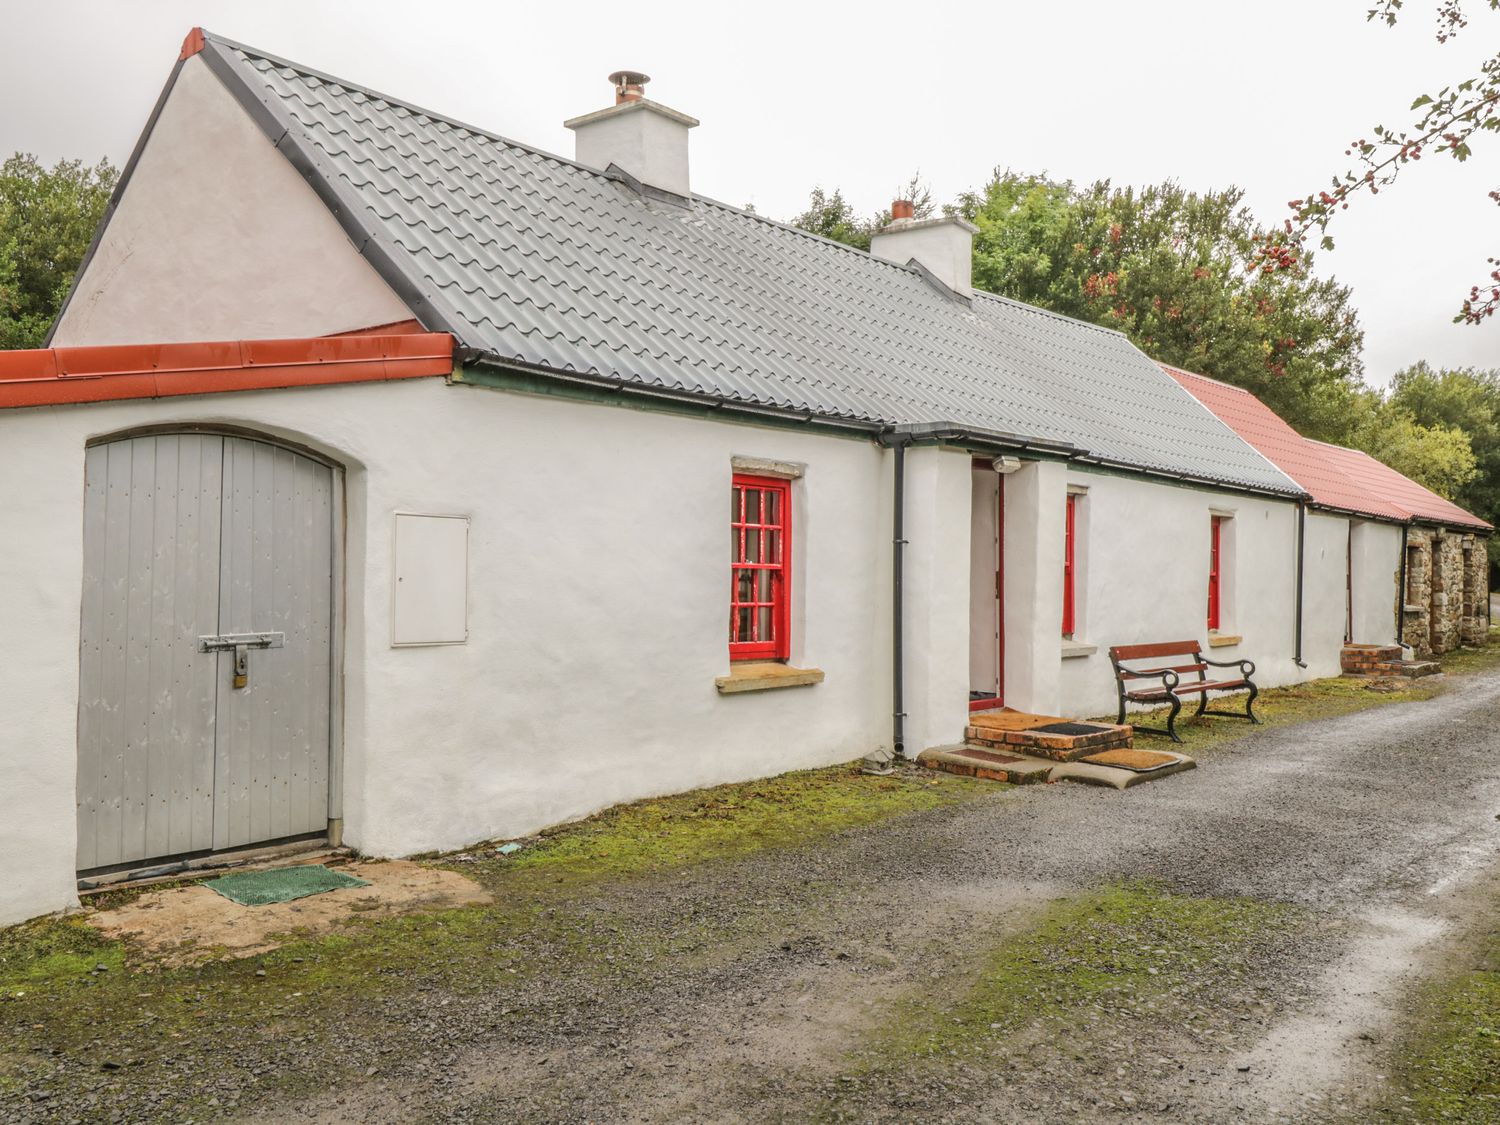 Willowbrook Cottage, Ireland